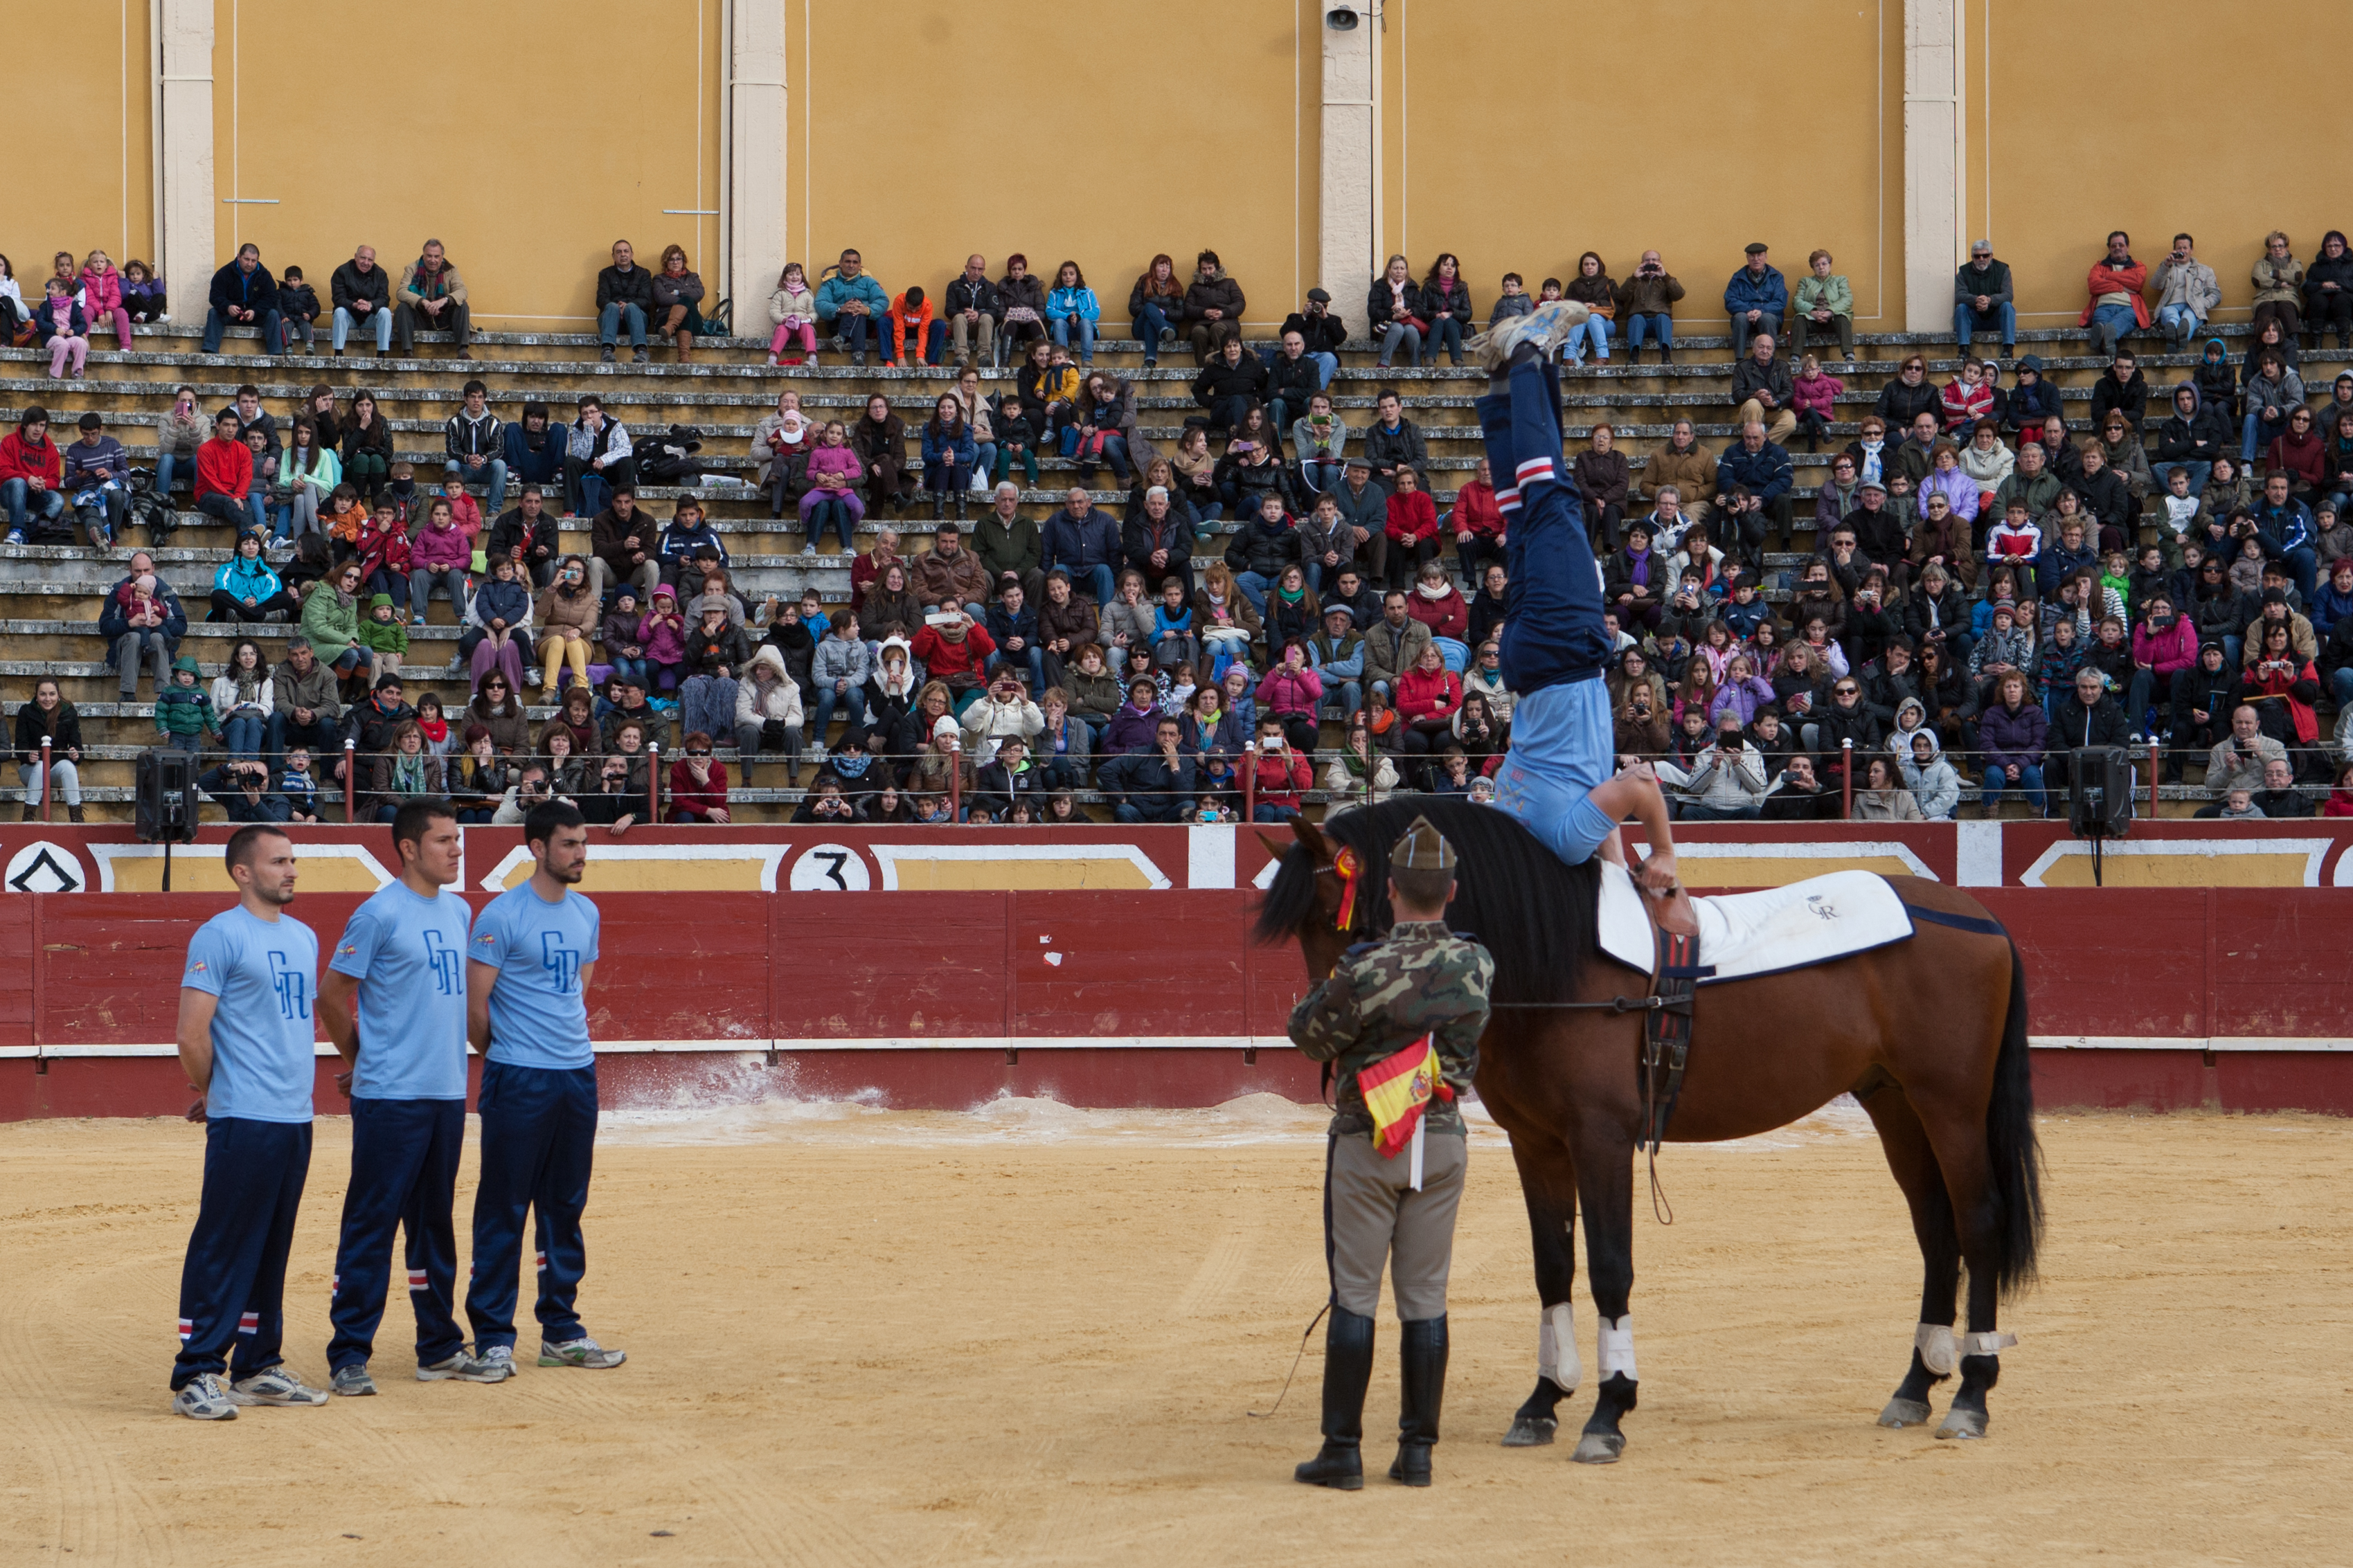 Actividades del Ejercicio de la Guardia Real Segovia 2014